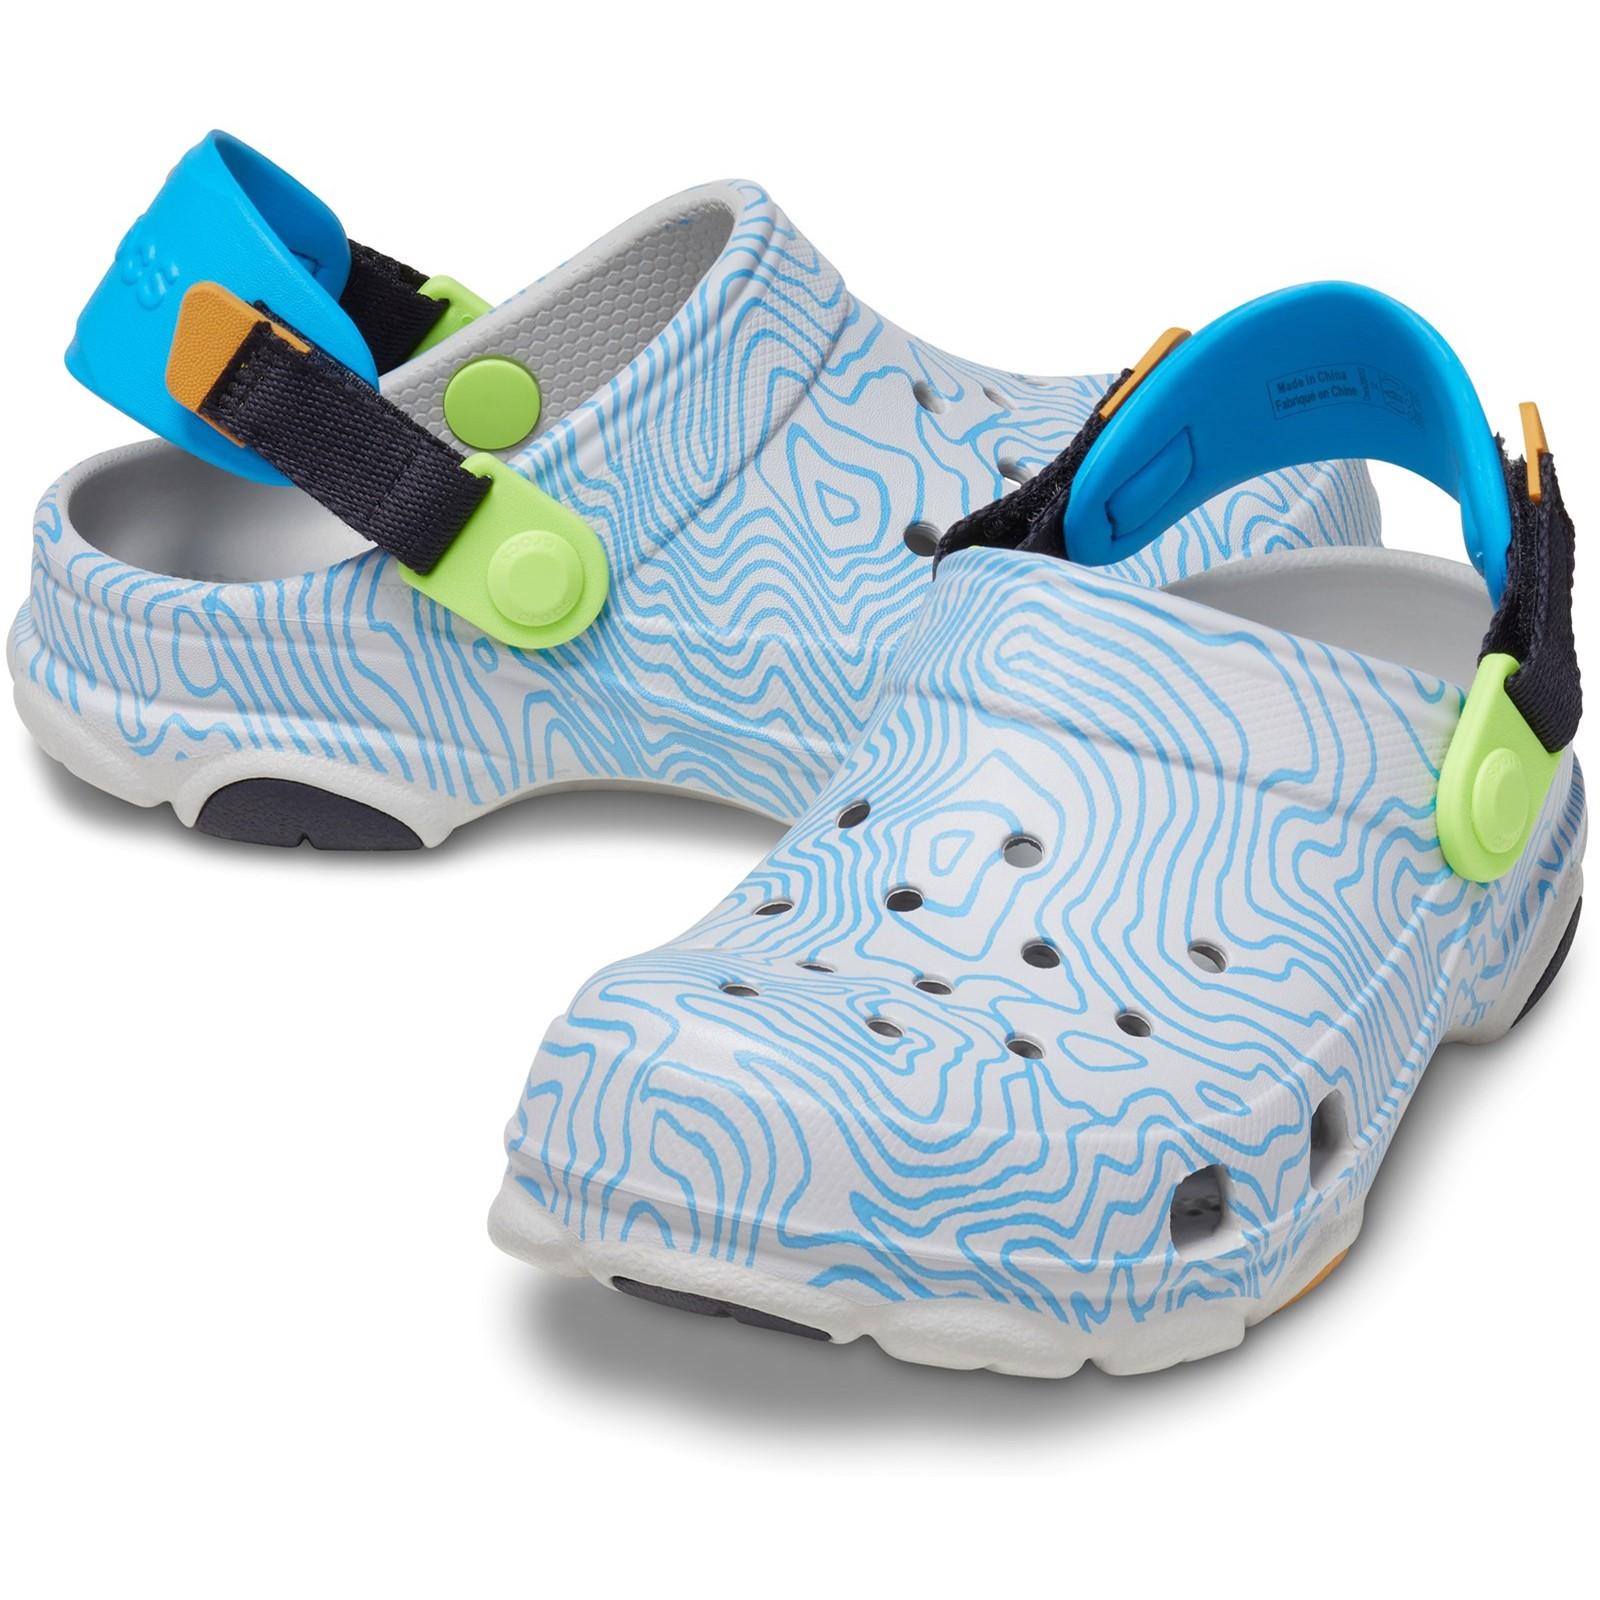 Crocs All Terrain Topographic Clog Sandals